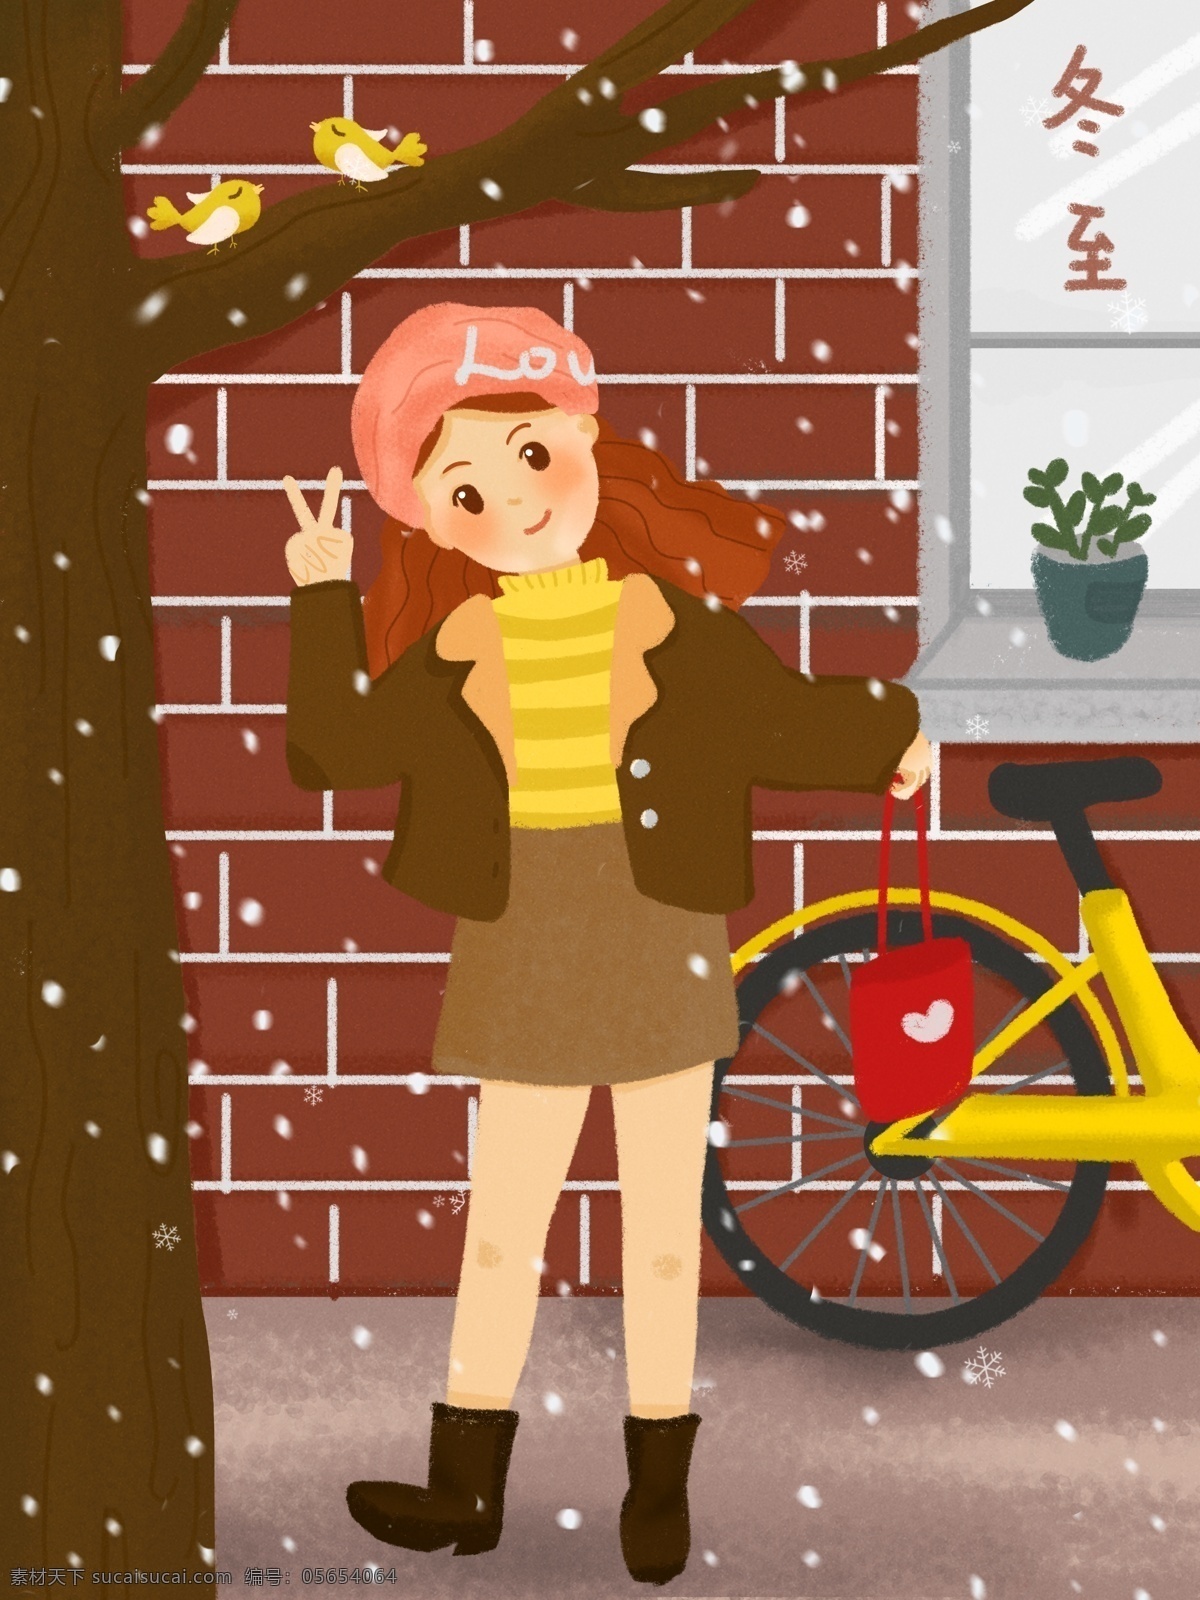 十 二 节气 冬至 女孩 树下 拍照 小女孩 下雪 单车 红砖 剪刀手 小 清新 噪 点 插画